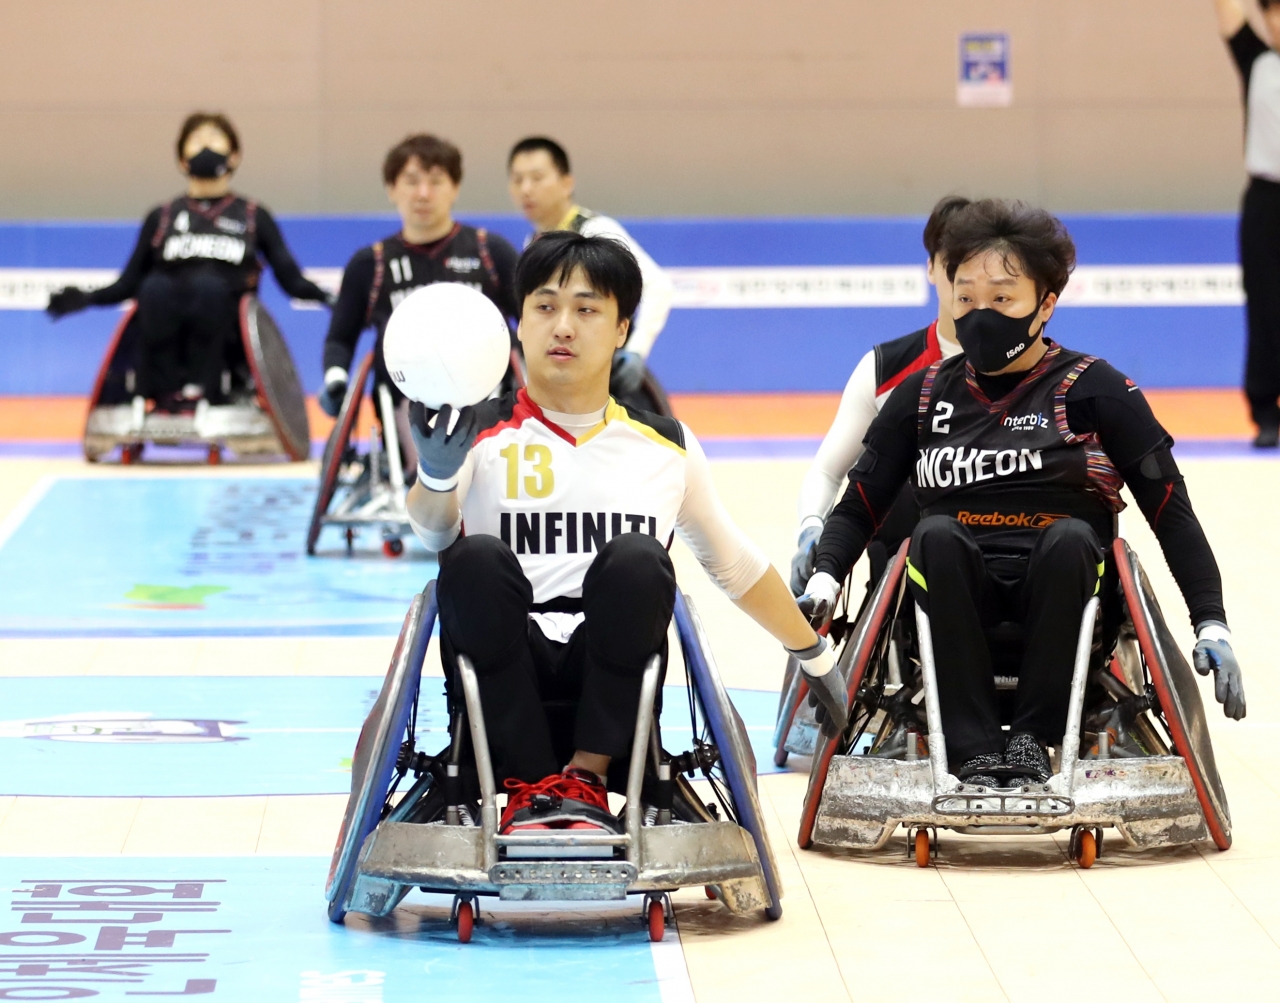 제41회 전국장애인체육대회 휠체어럭비 결승전에서 황희철 선수가 드리블을 하고 있다. /충북도장애인체육회